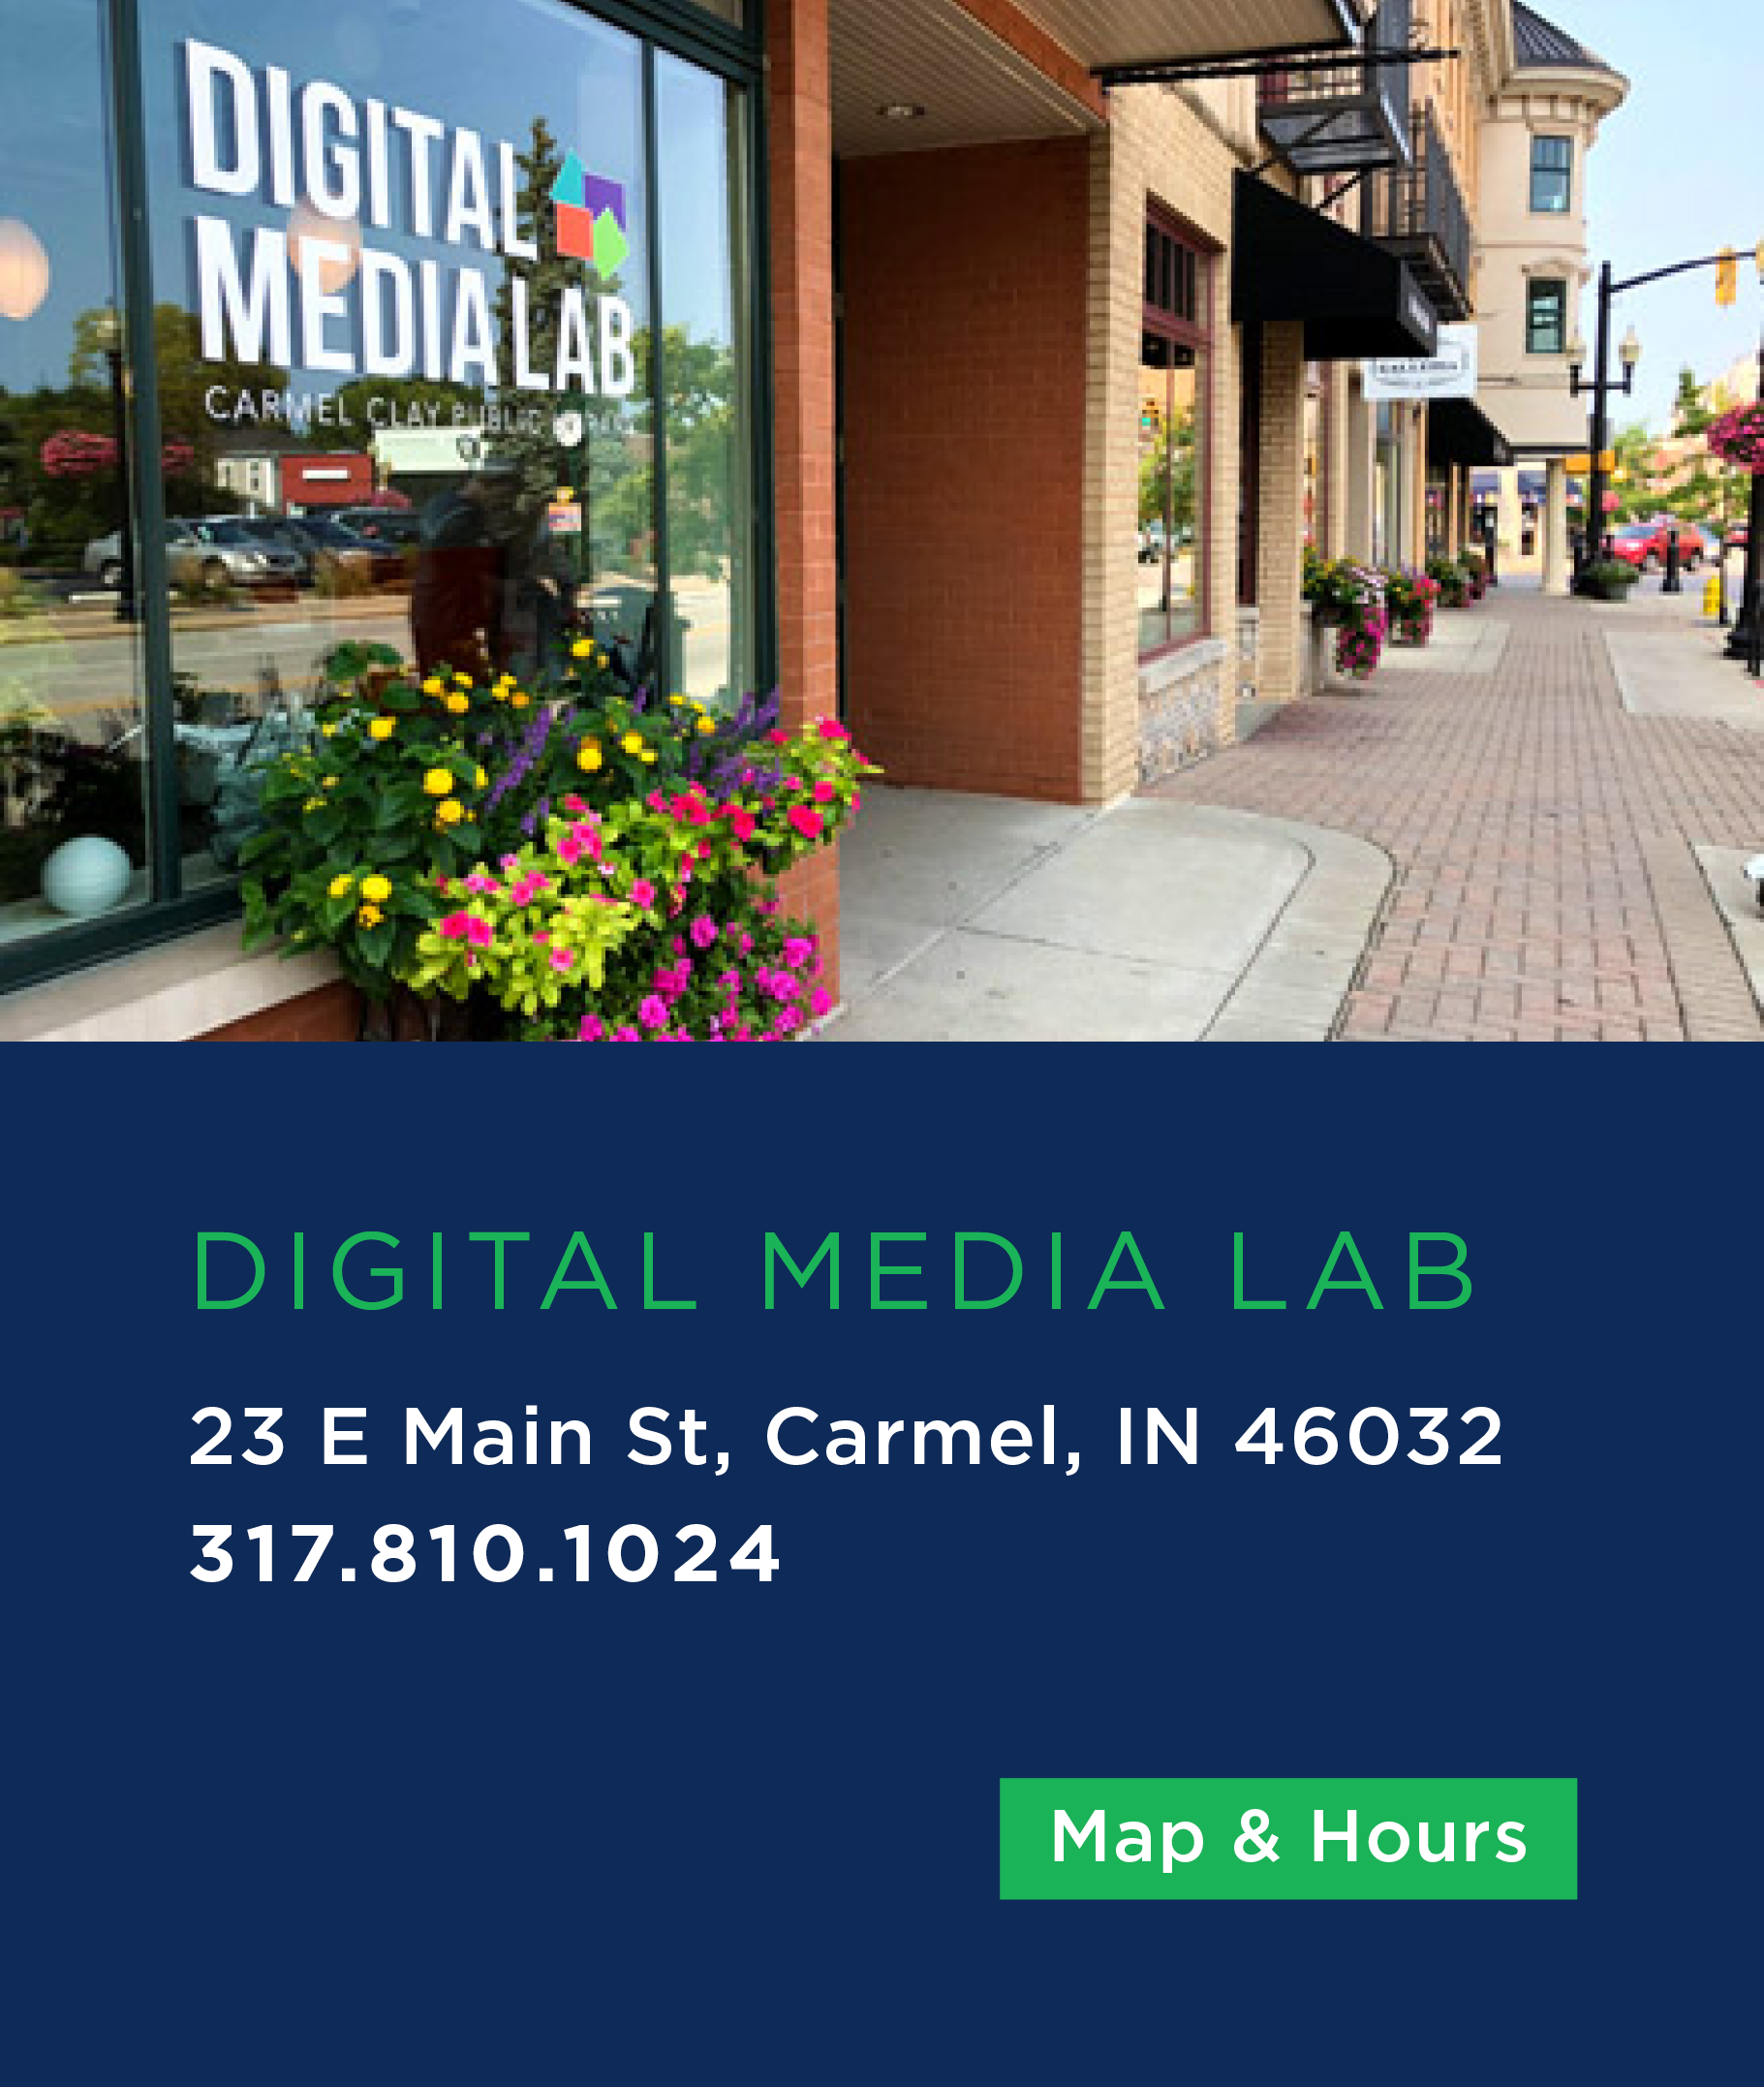 Digital Media Lab Information